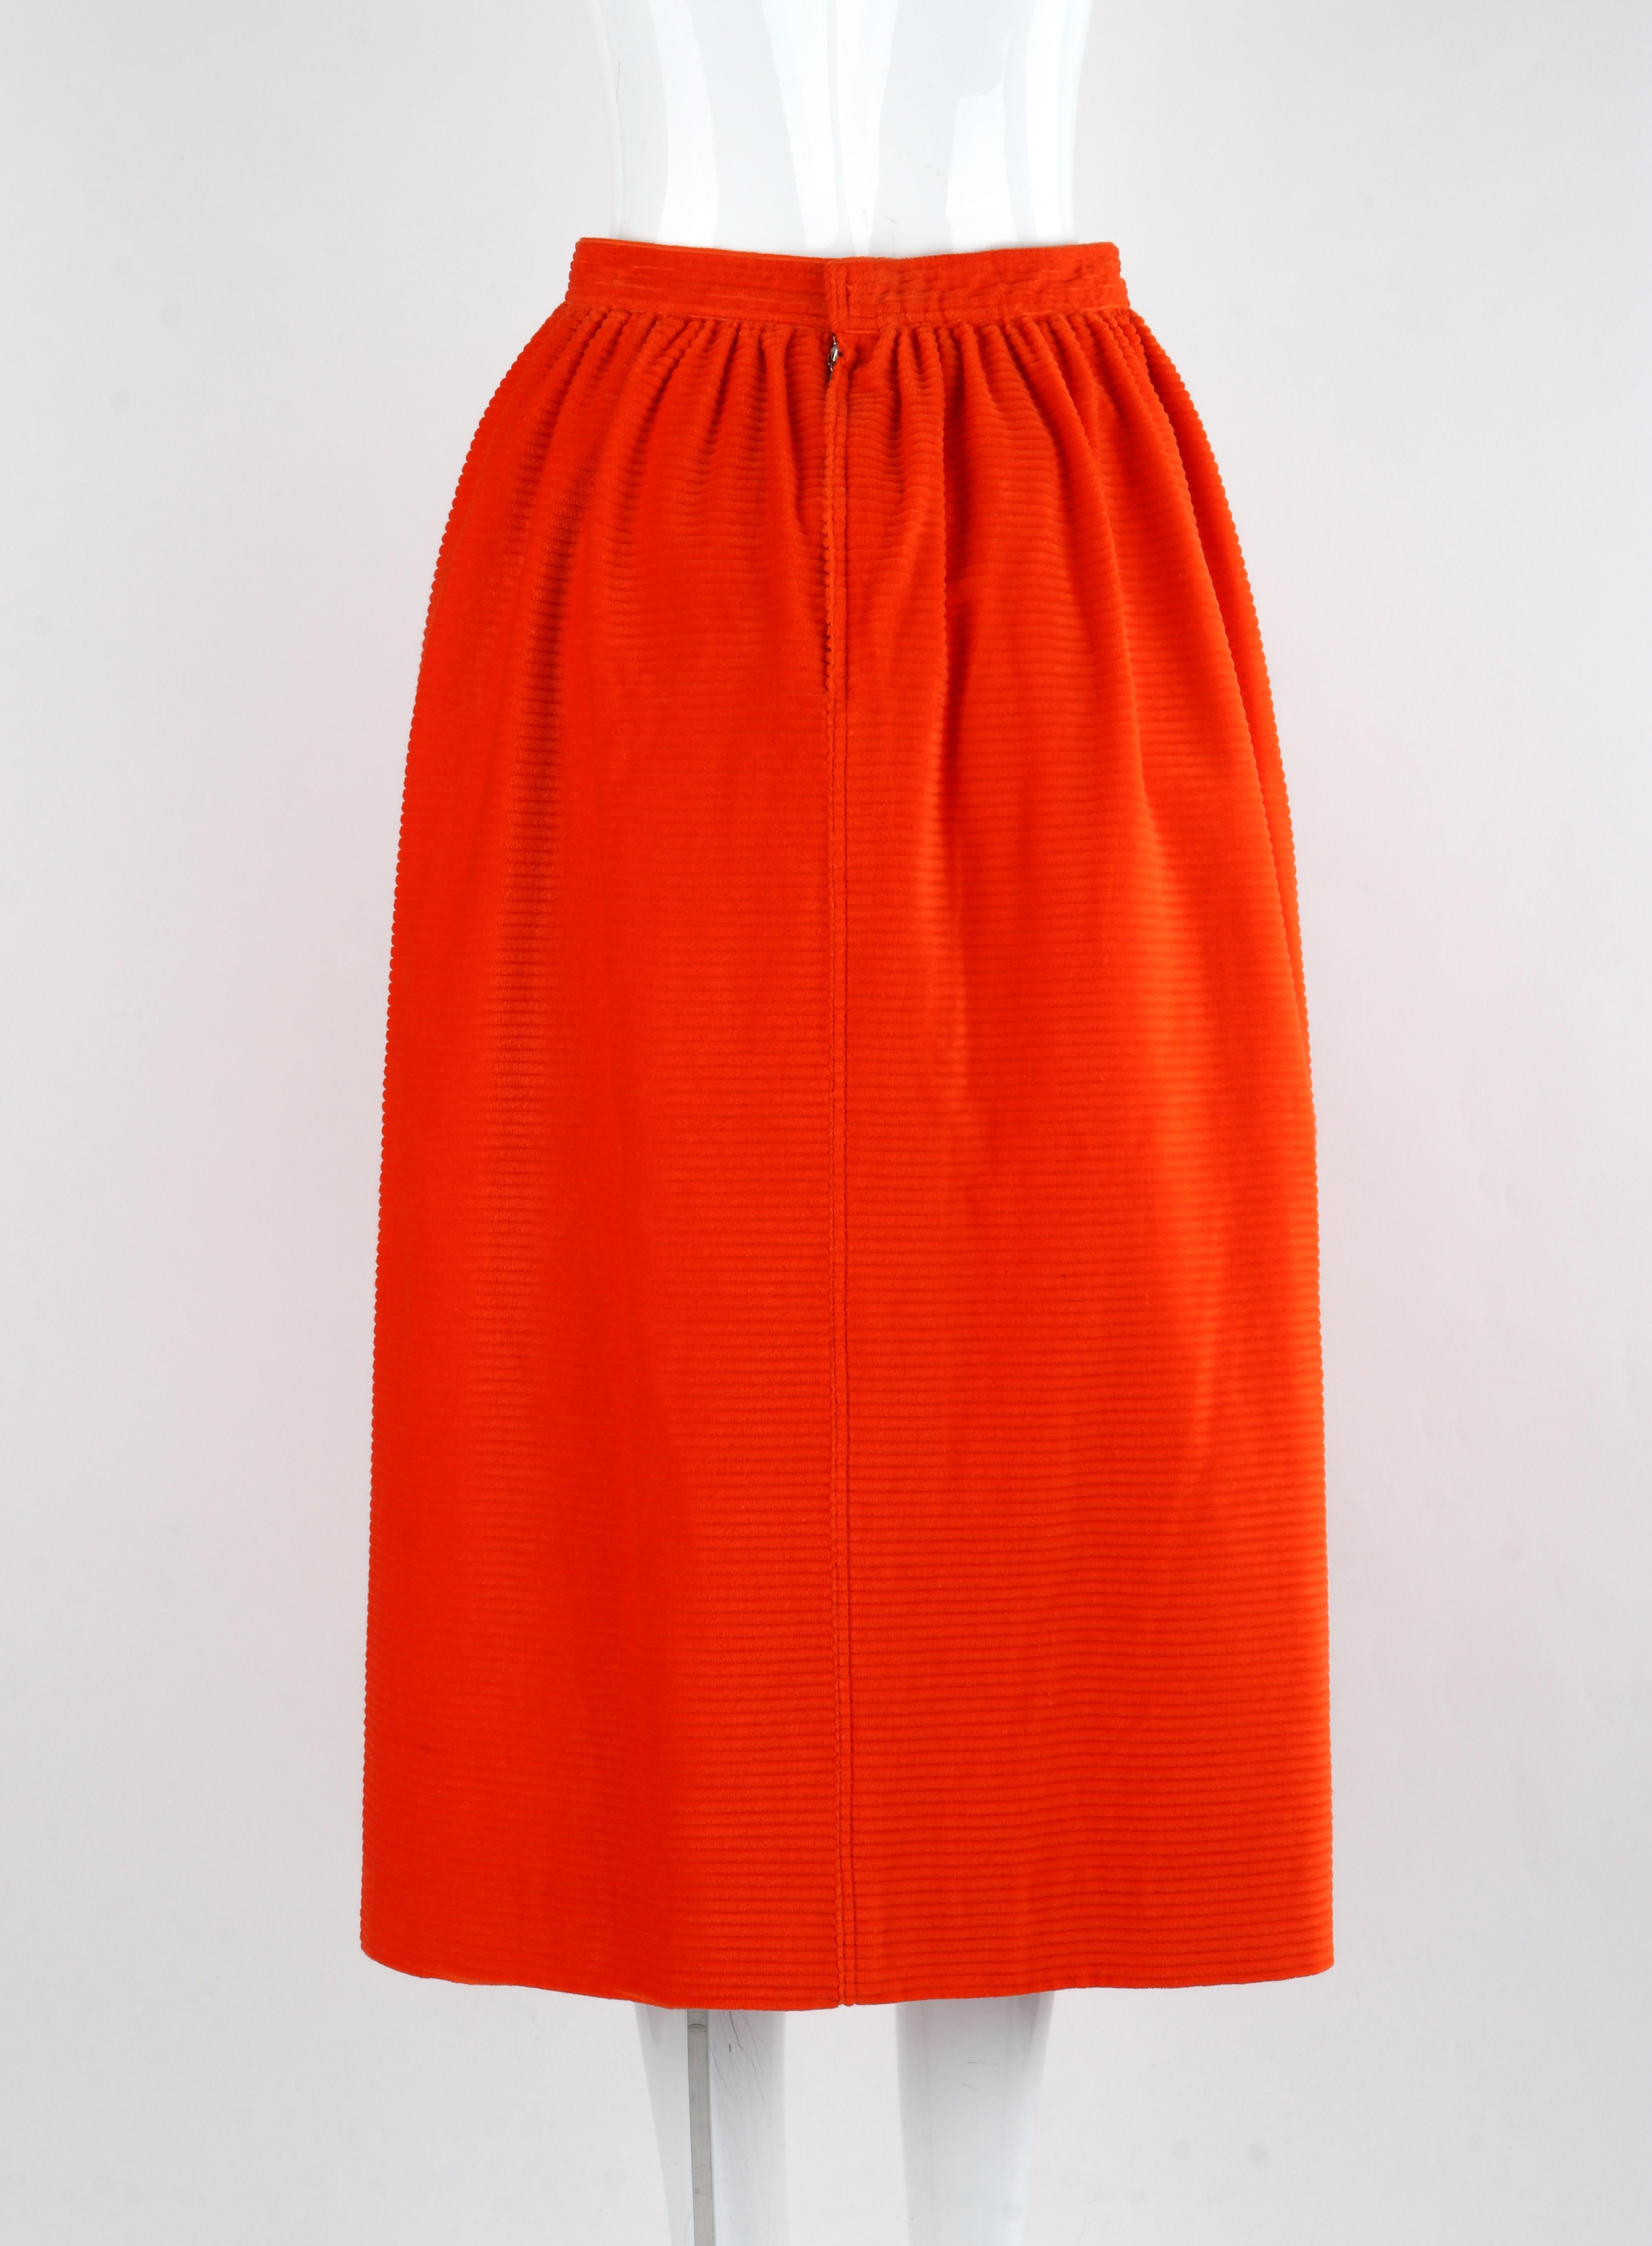 COURREGES c.1970's Orange Corduroy Button Up Jacket Blazer Skirt Suit Set w/Tags For Sale 5